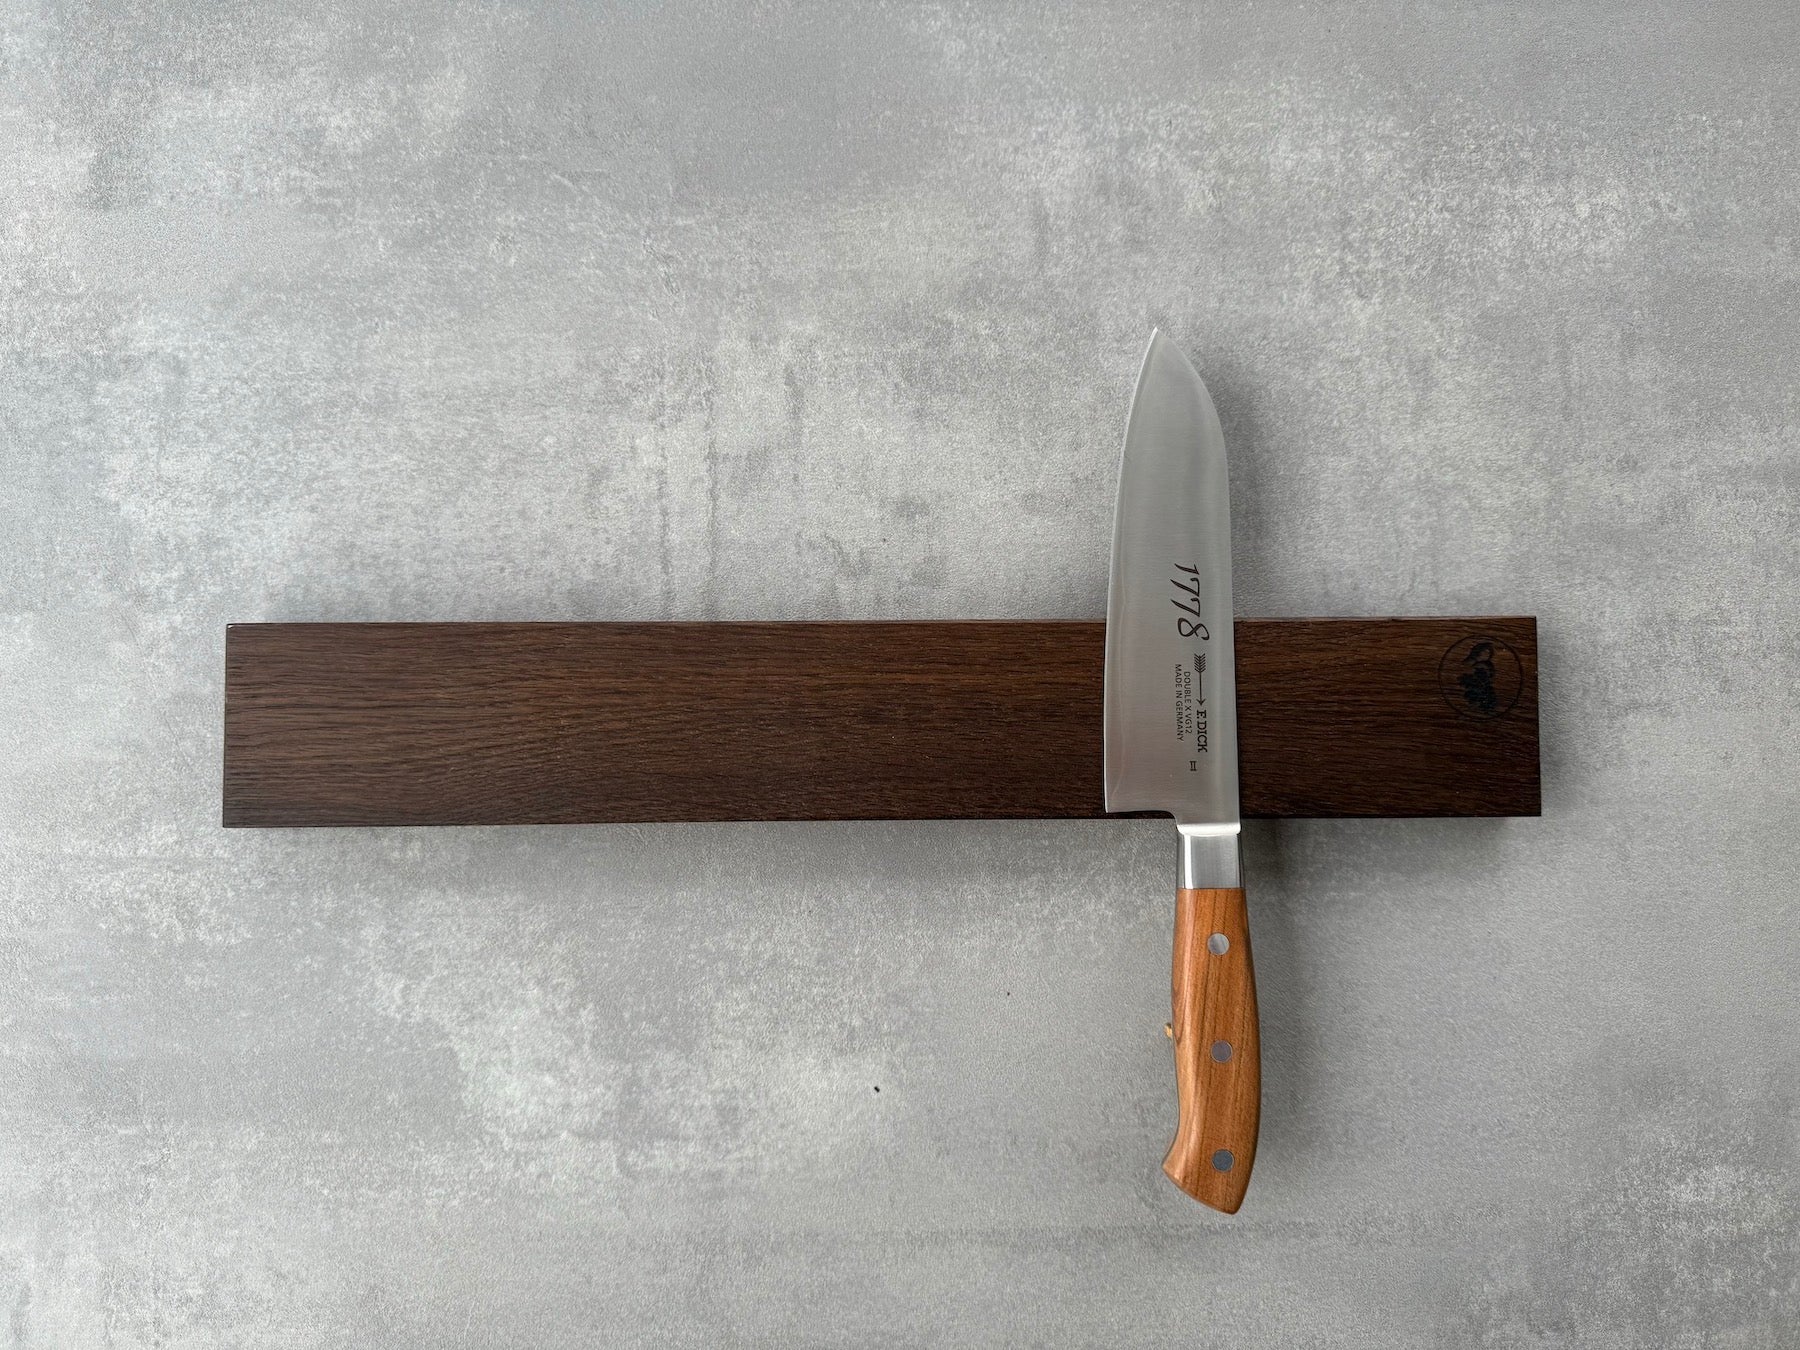 Wandmesserhalter, magnetisch, für 8 Messer, an einer Betonwand. Mit einem Dick Kochmesser dekoriert.